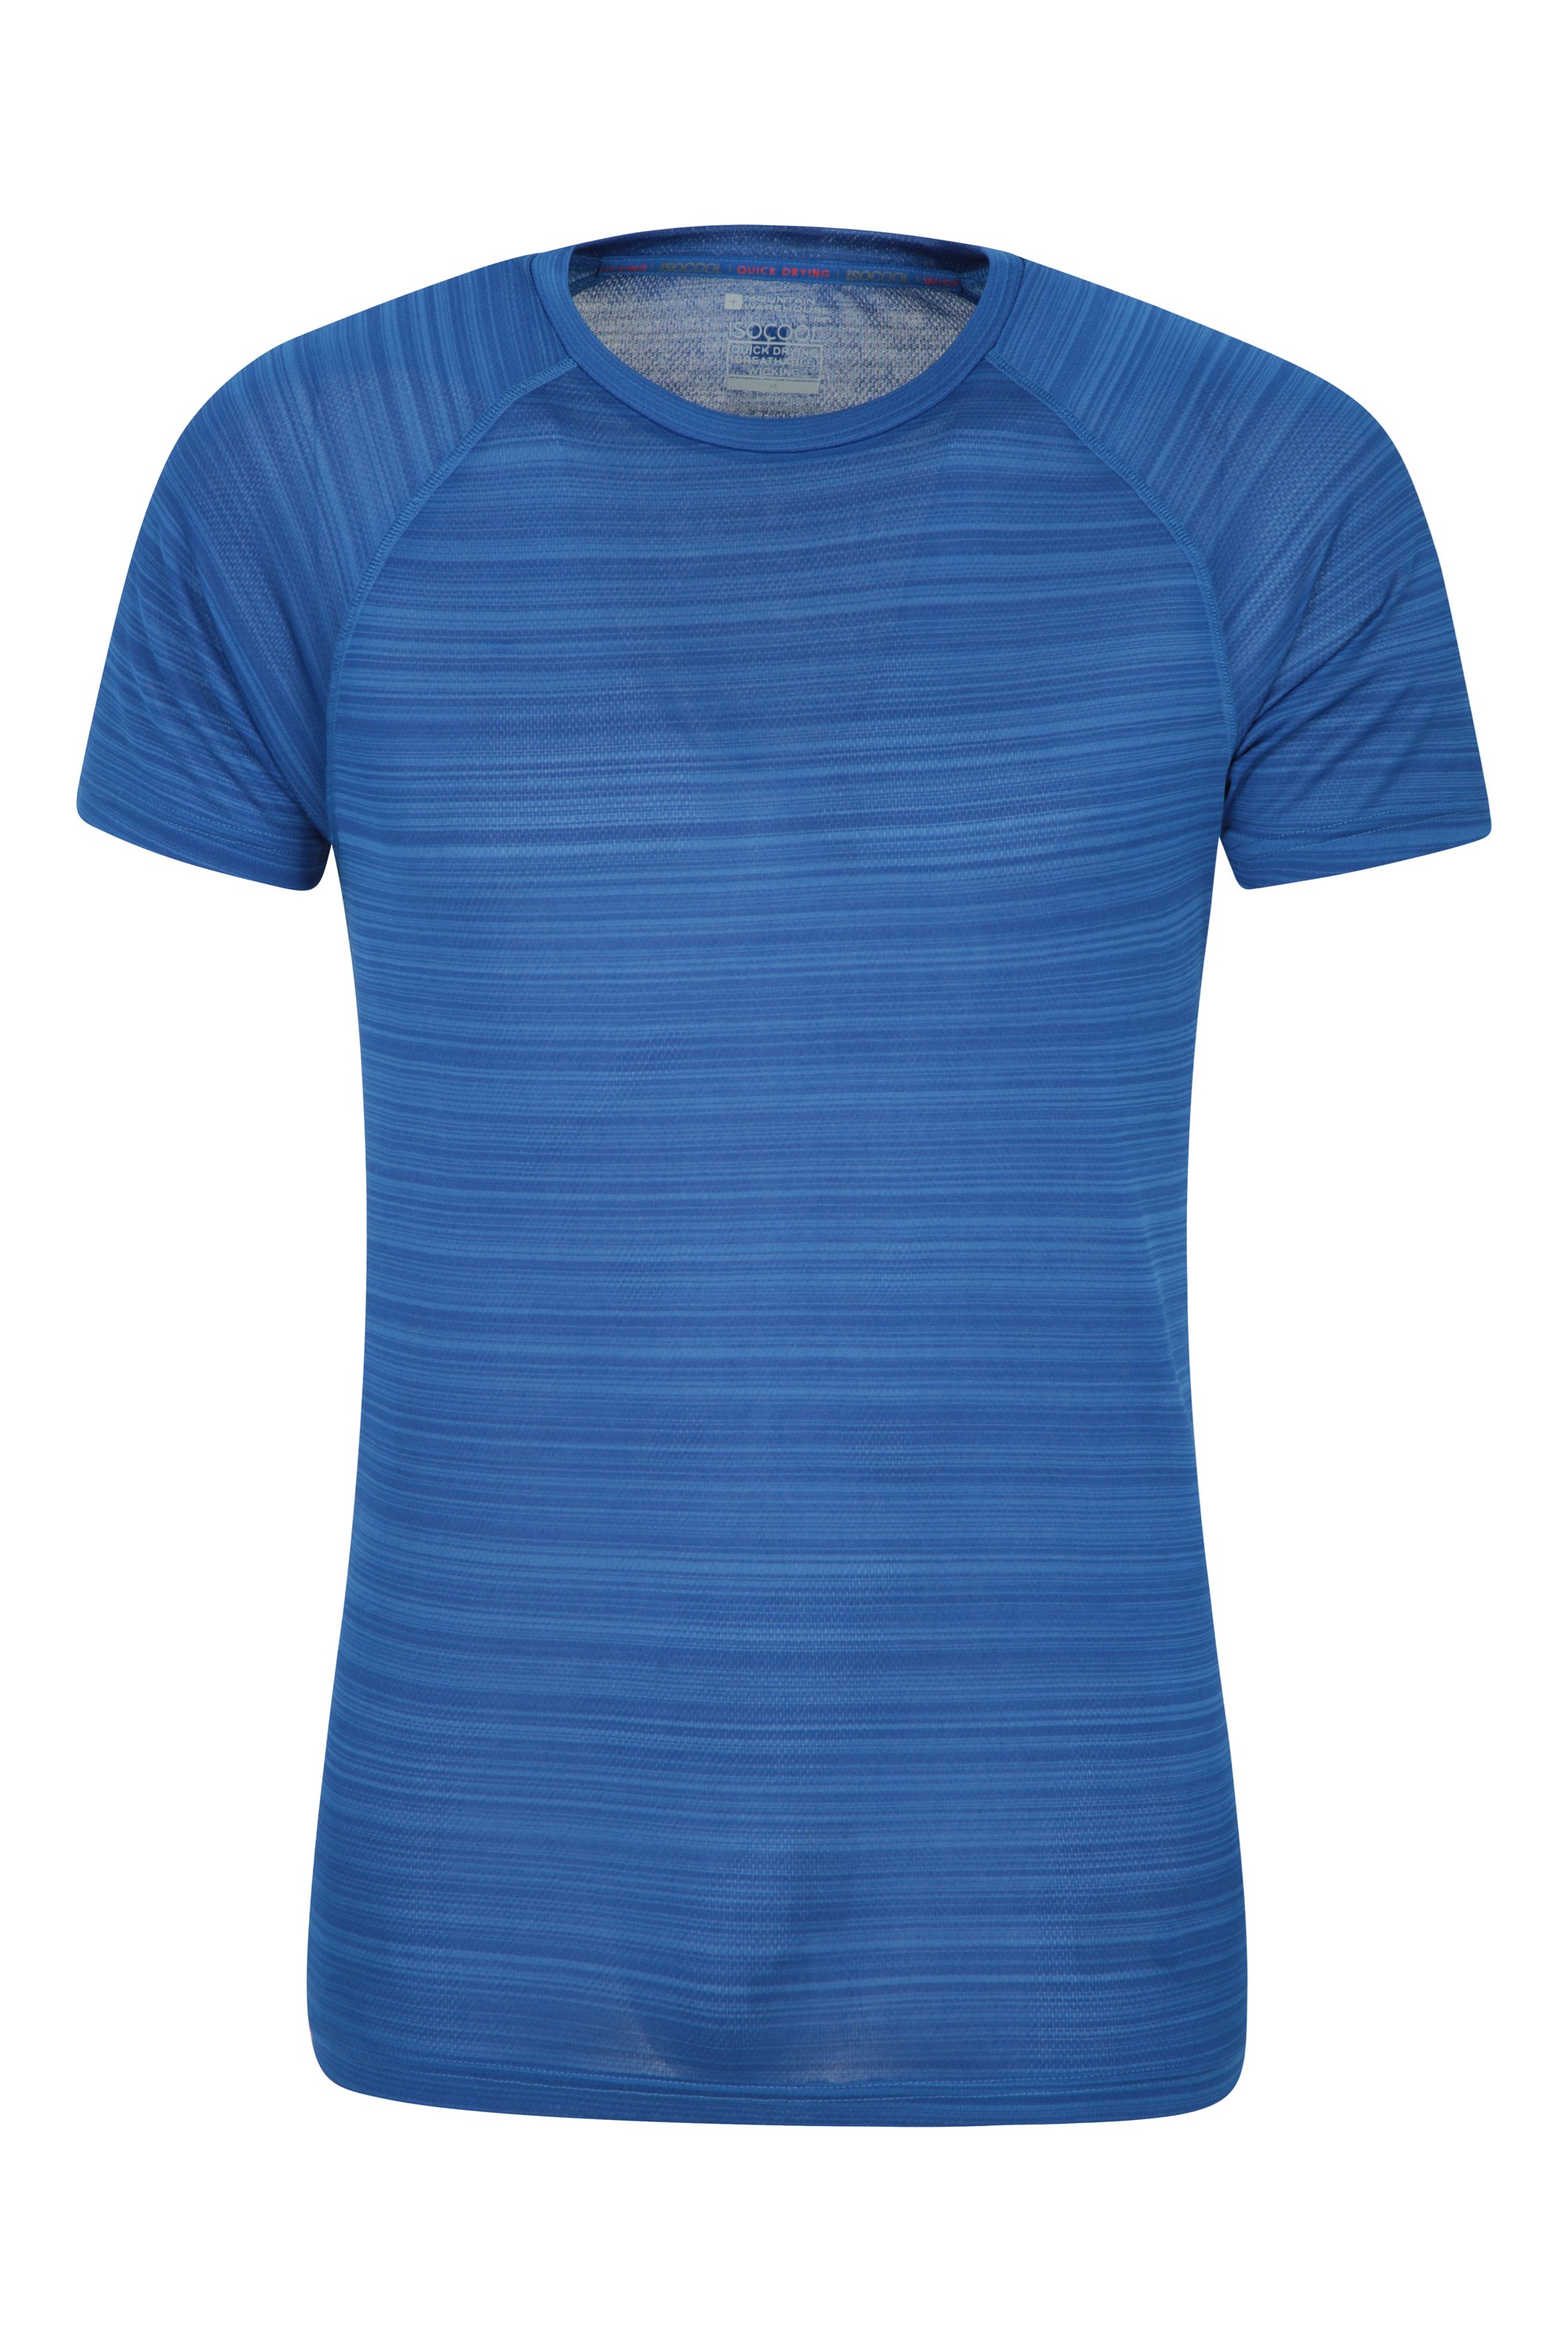 T-Shirt Endurance à Rayures - Hommes - Bleu